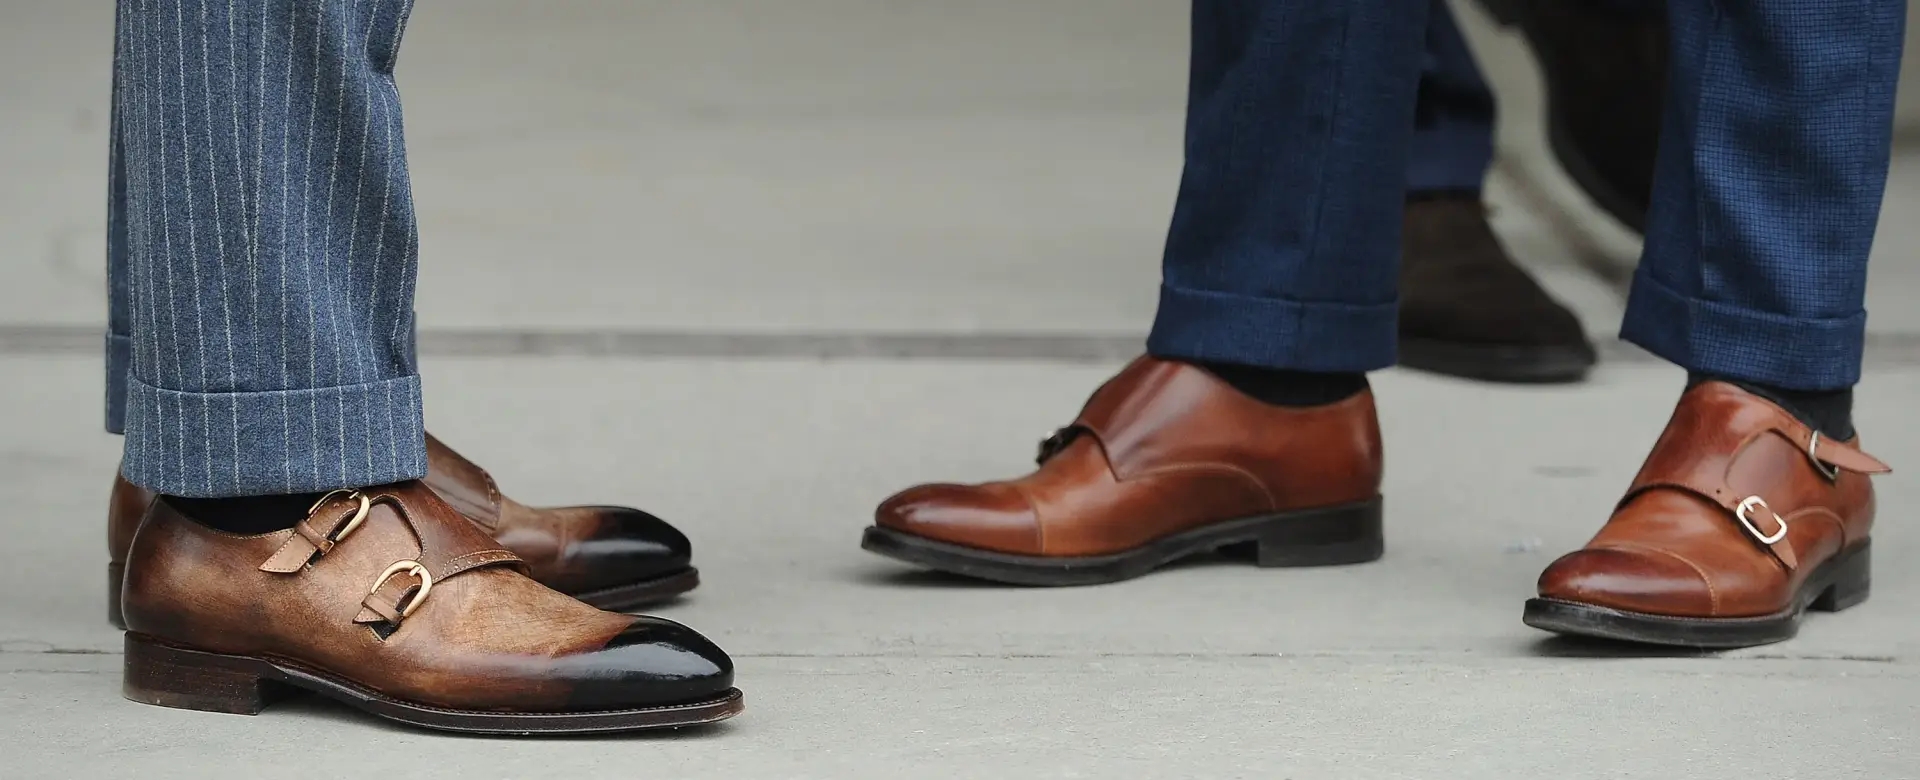 Chọn giày tây cùng suit thế nào mới đúng chuẩn?